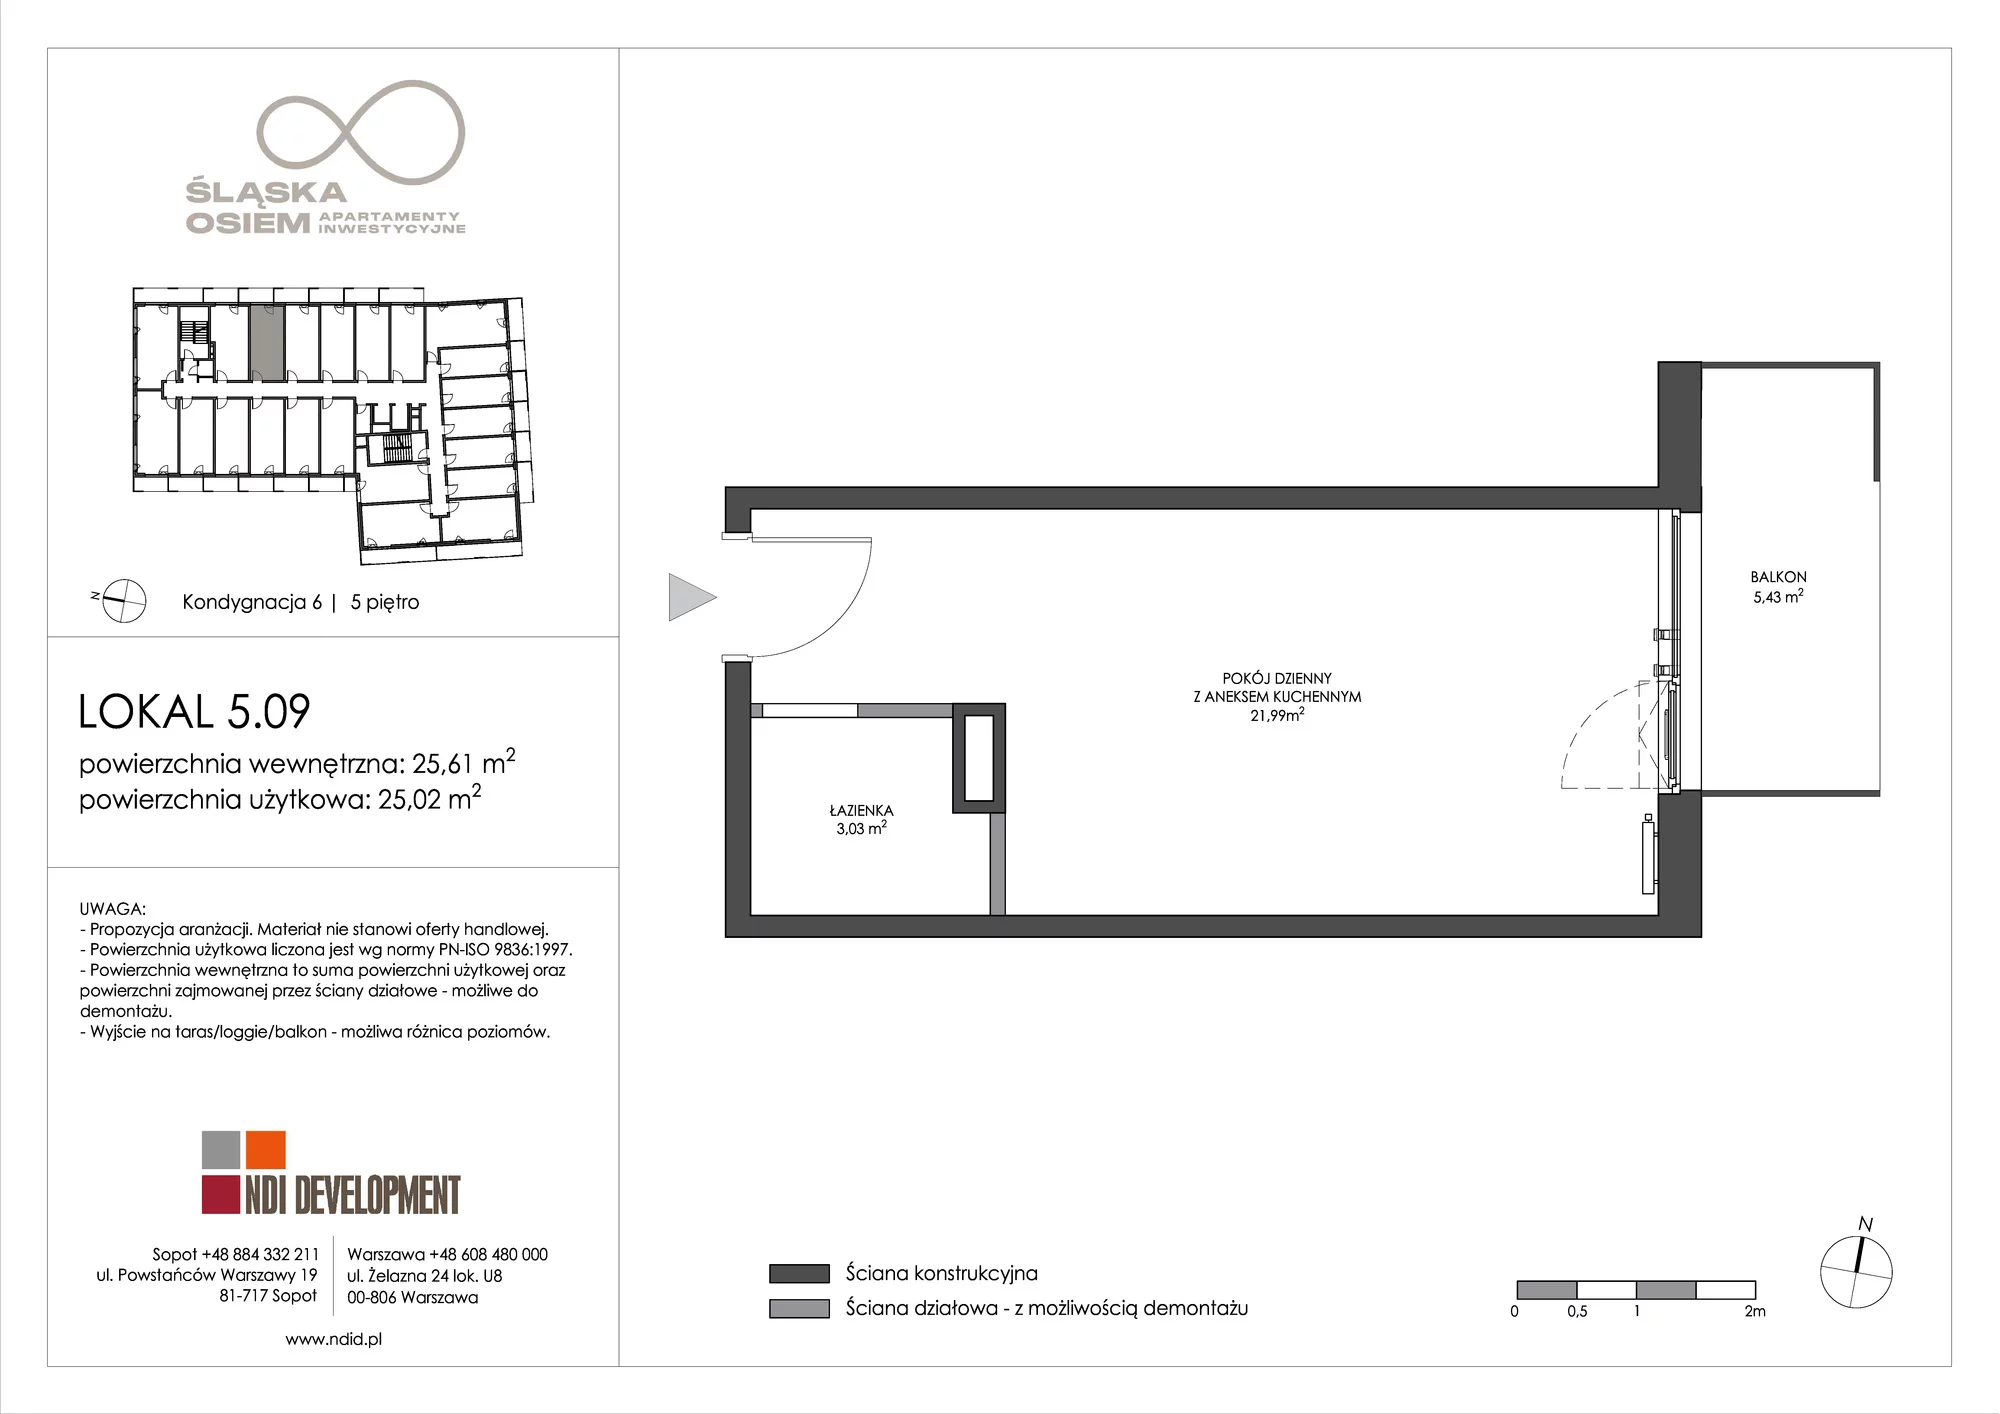 Apartament inwestycyjny 25,61 m², piętro 5, oferta nr 5.09, Śląska Osiem, Gdańsk, Przymorze, ul. Śląska 8